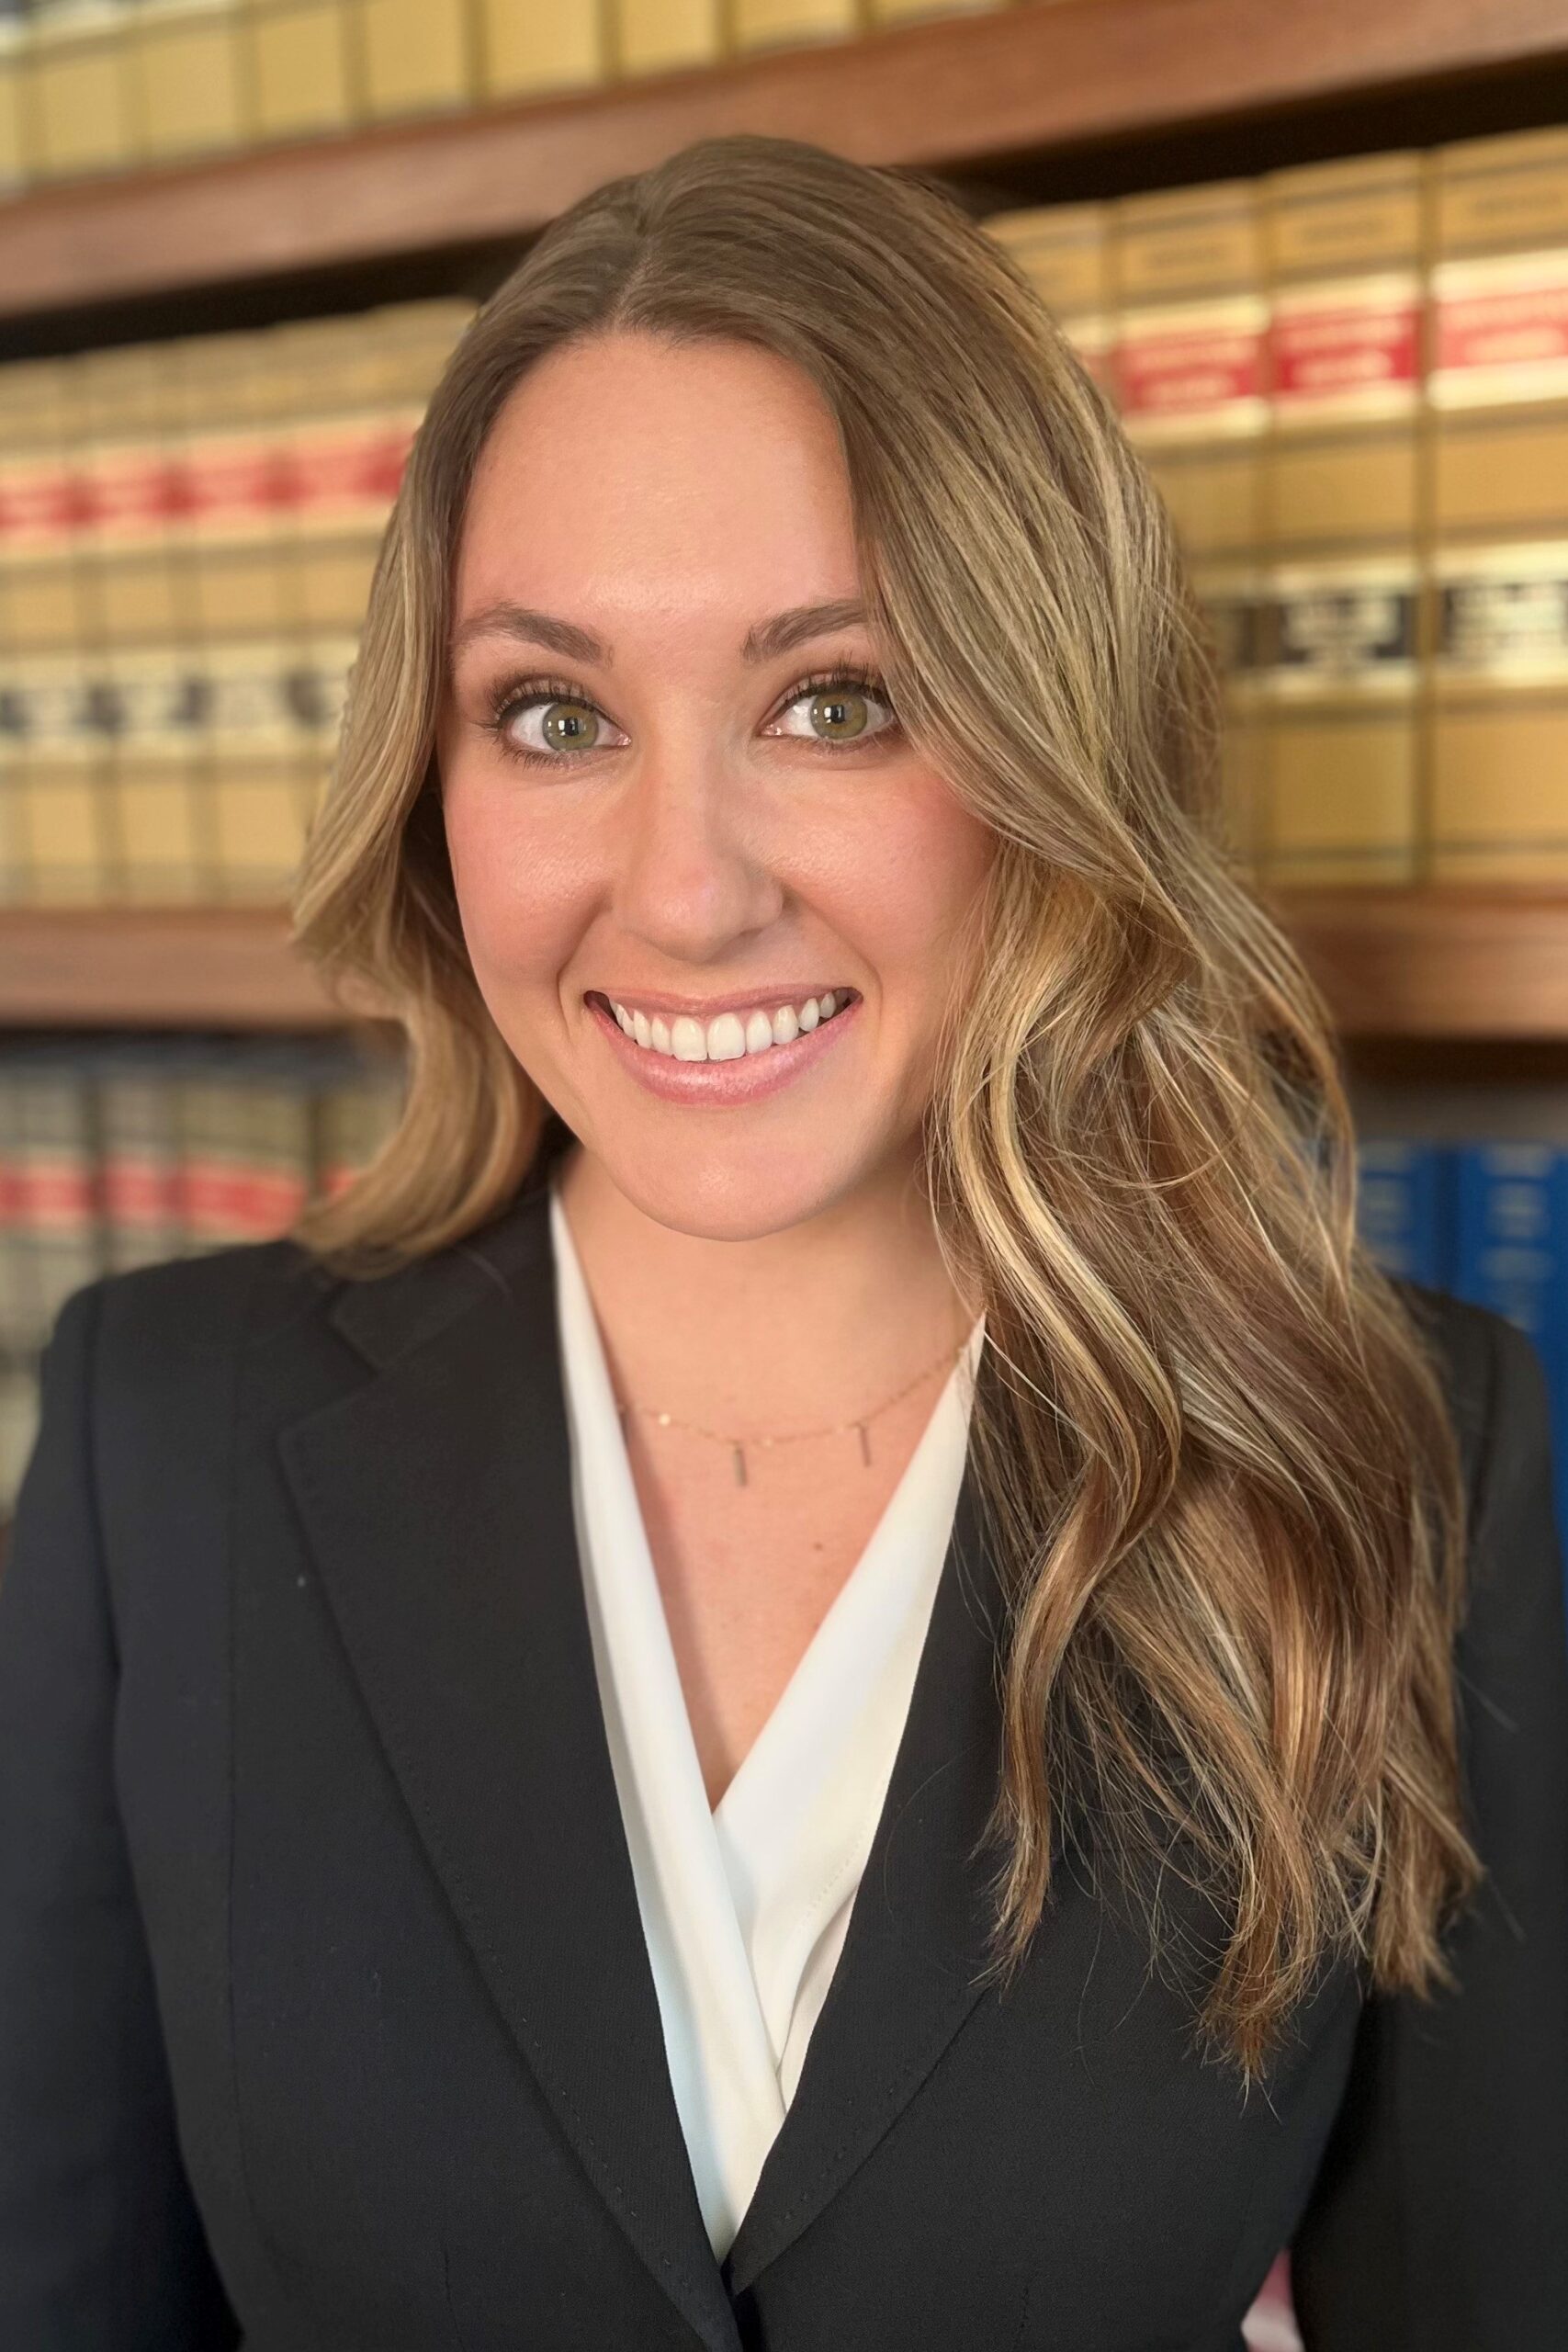 Lauren Astone dental med mal attorney Hartford CT